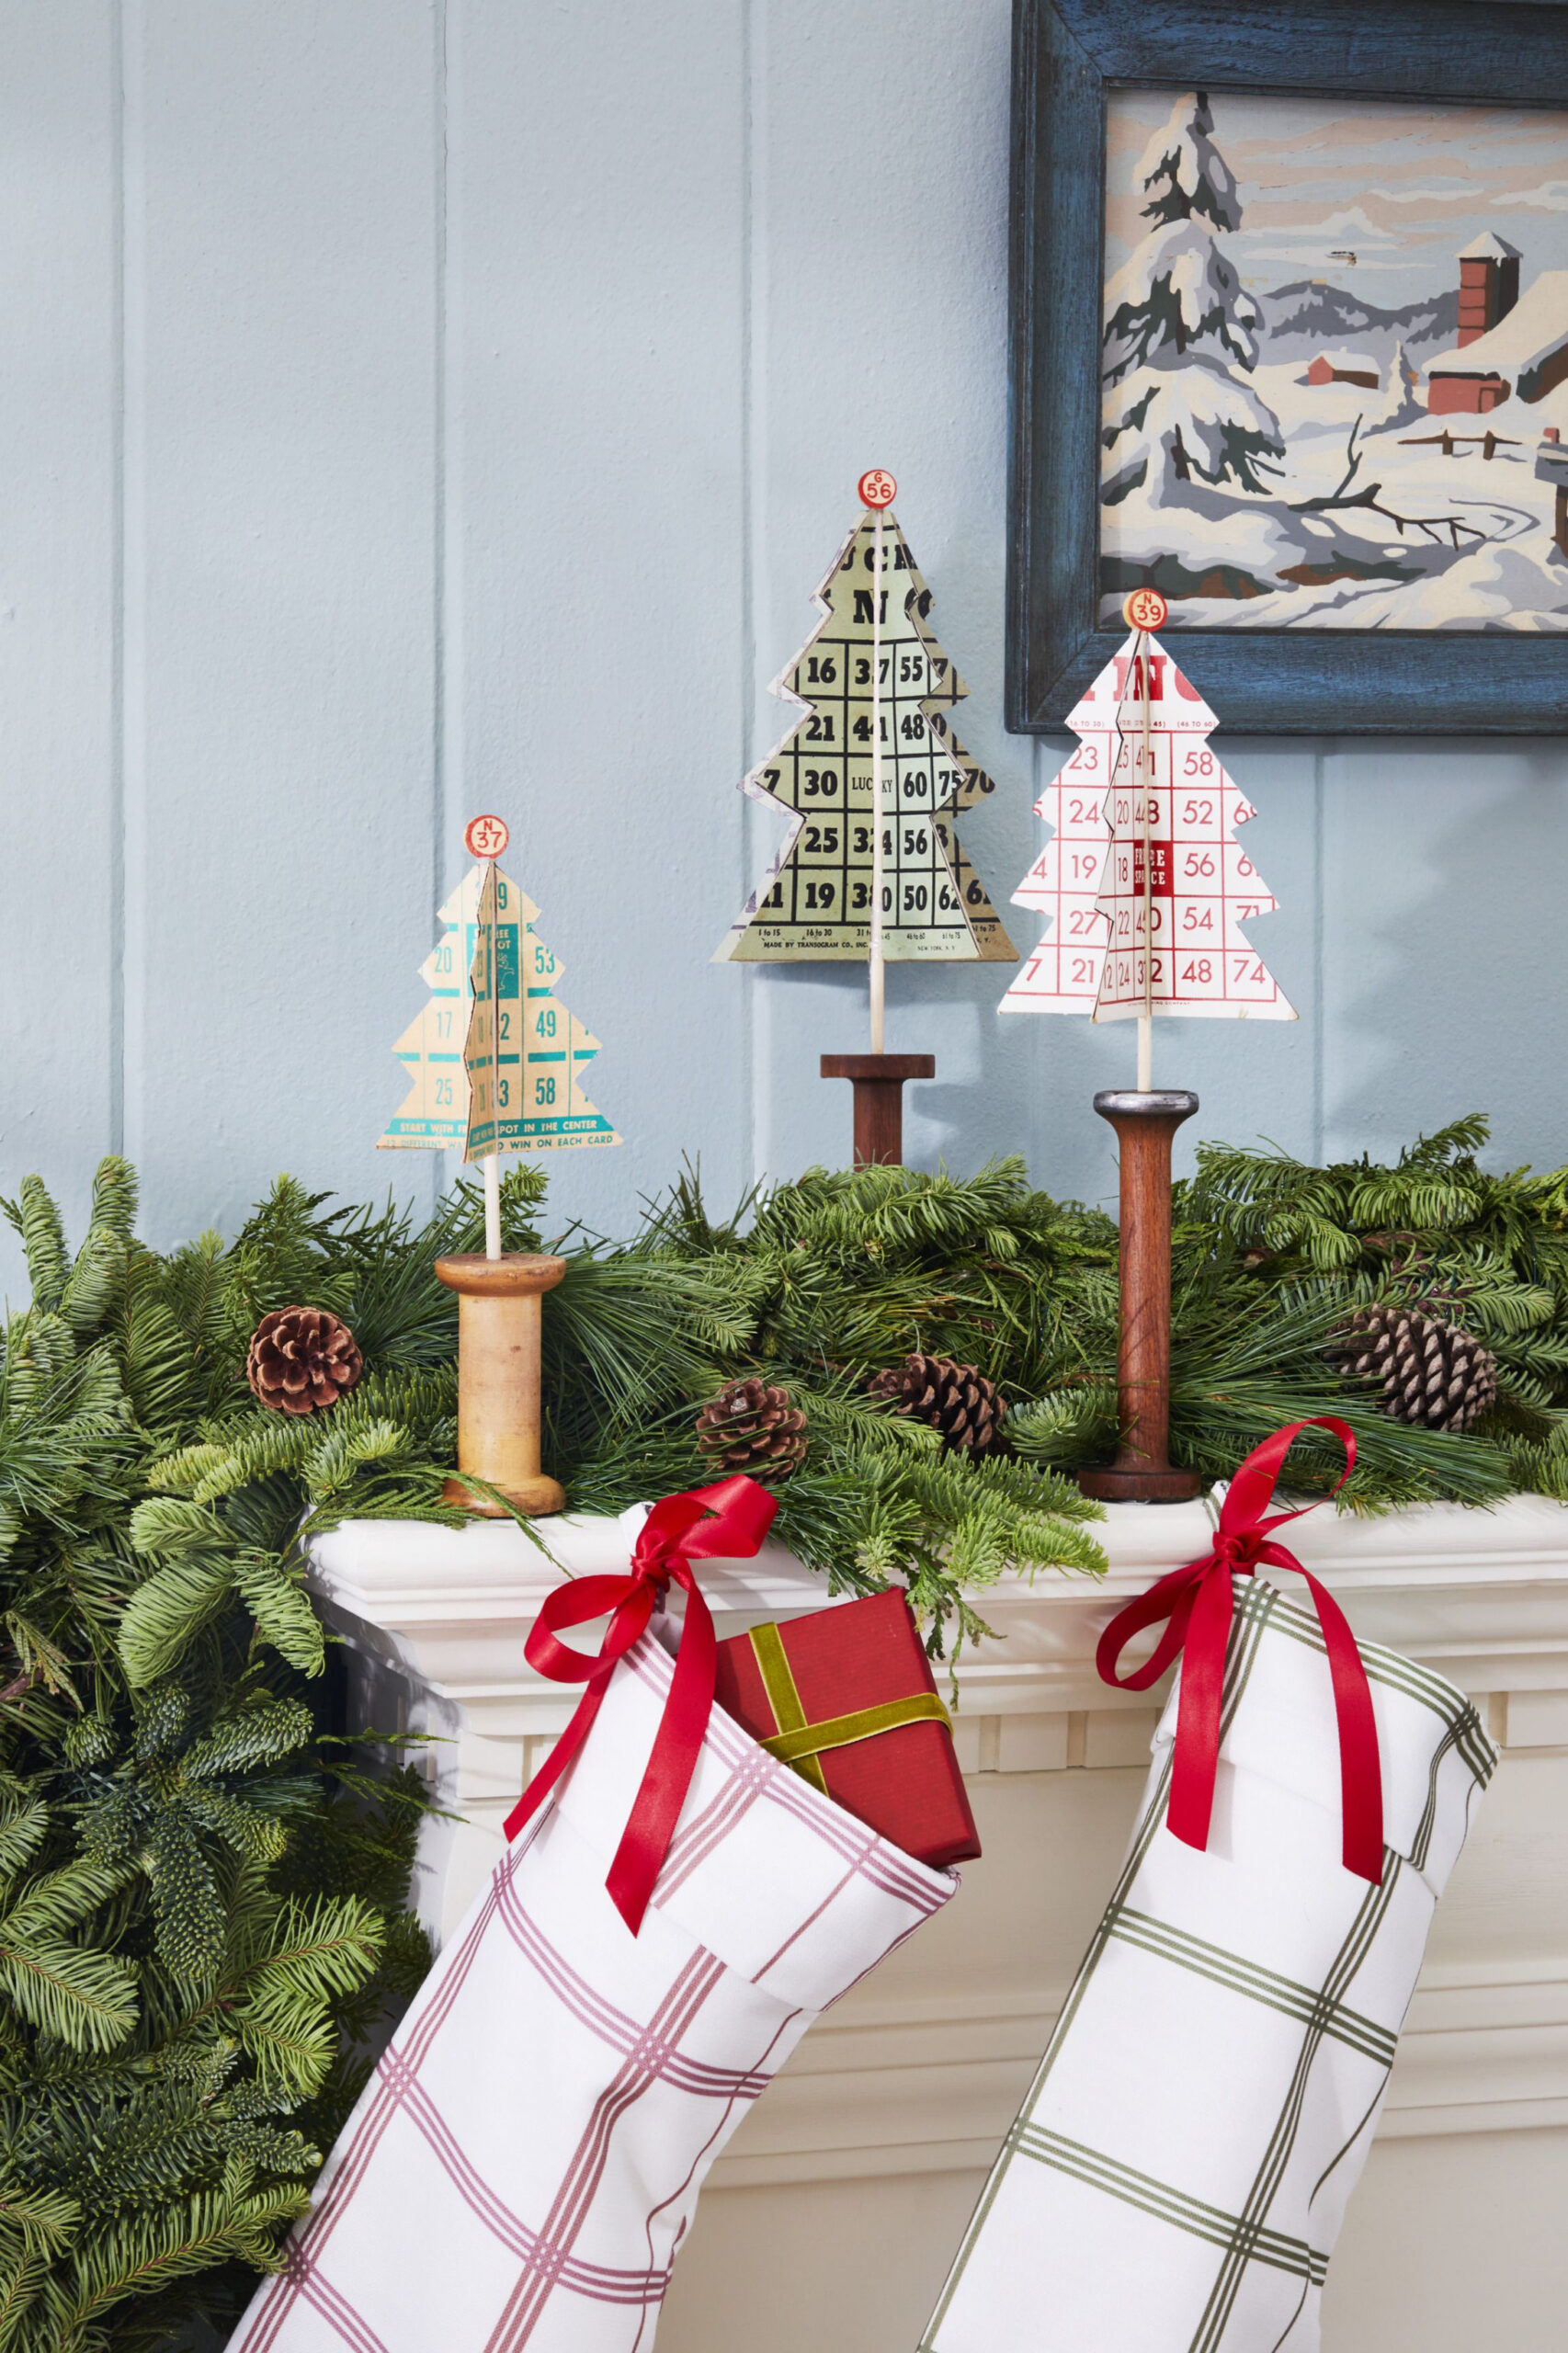 DIY Christmas Decorations - Homemade Christmas Decor Ideas